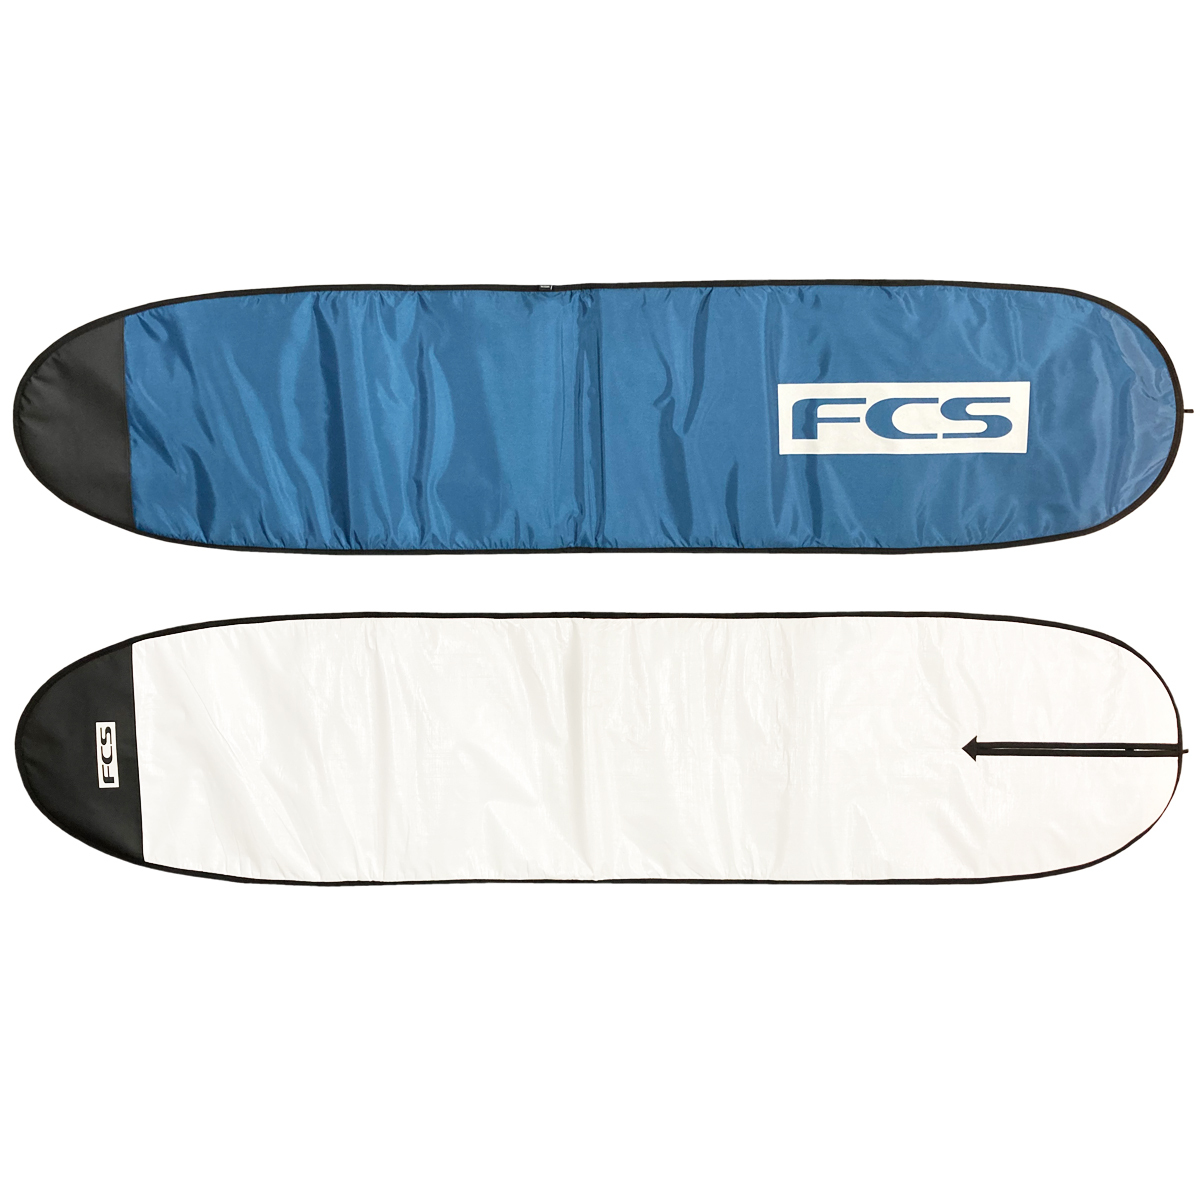 サーフボードケース ロングボード 9'2" FCS エフシーエス CLASSIC Long Board クラシック ハードケース サーフボード サーフィン 5ミリパッド